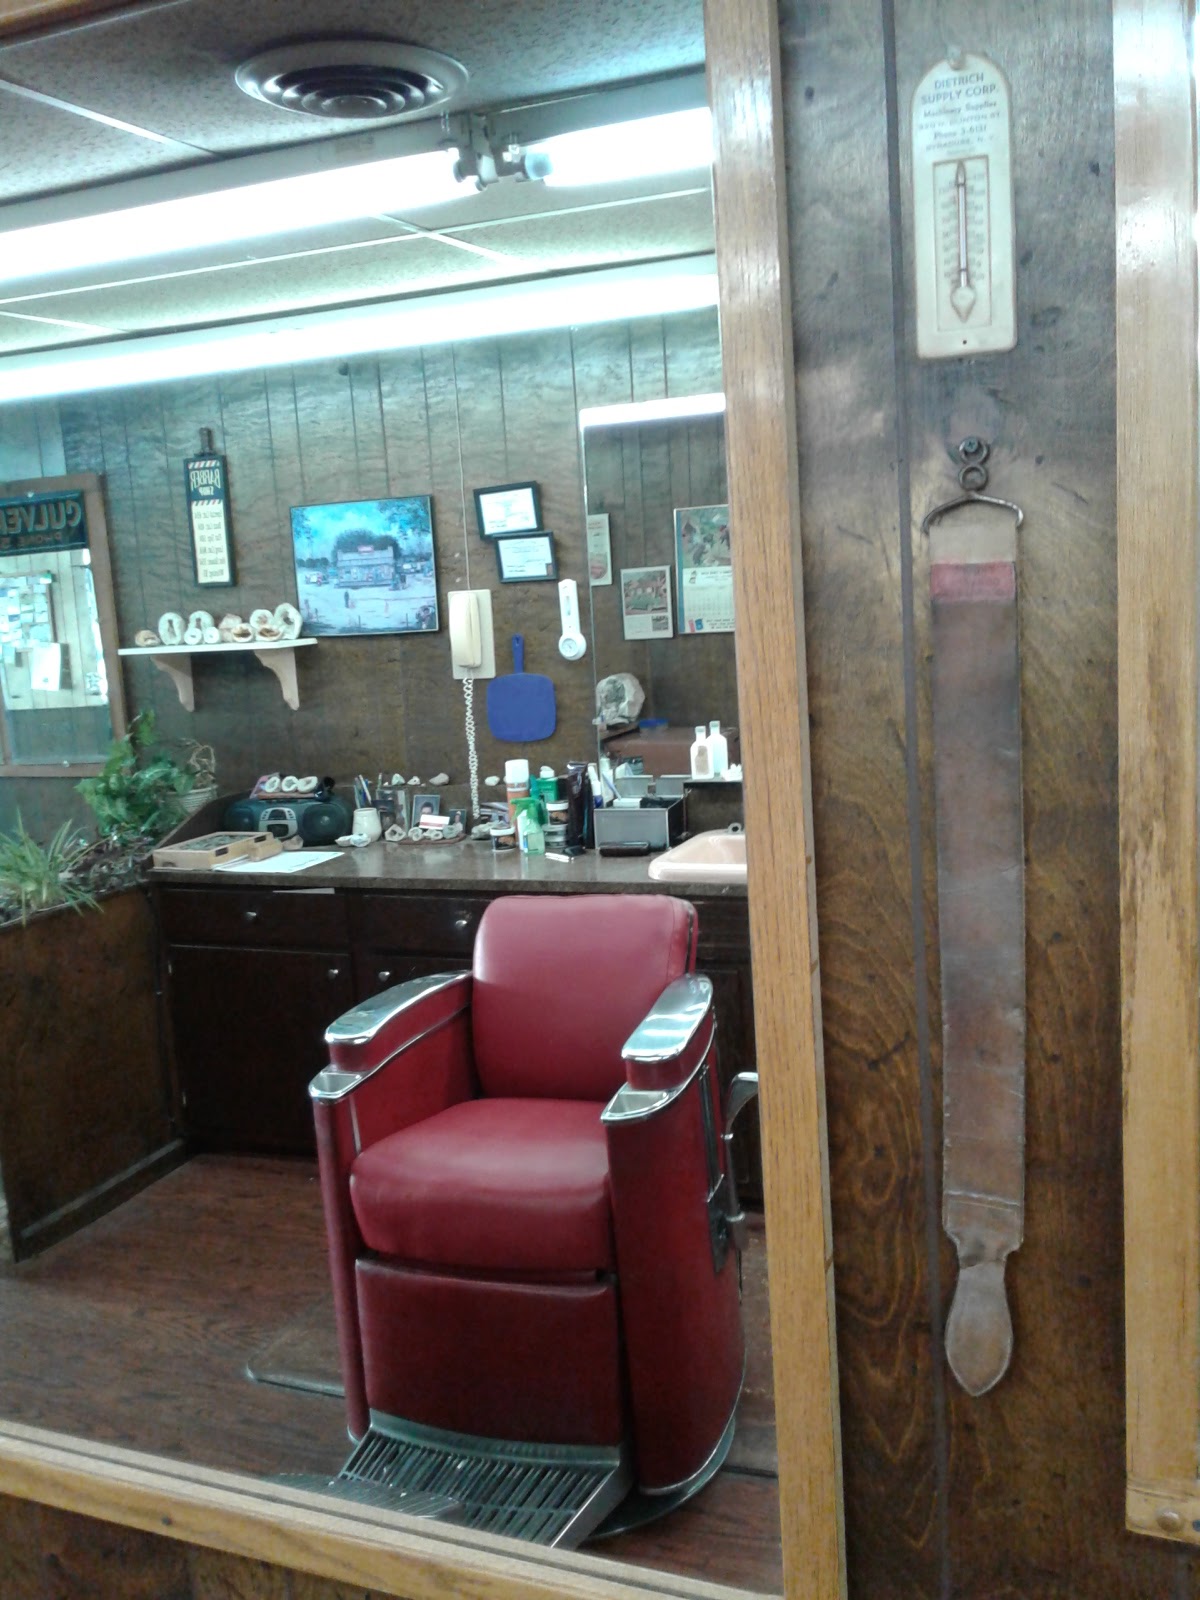 Stumpff's Barber Shop 609 Main St, Cassville Missouri 65625